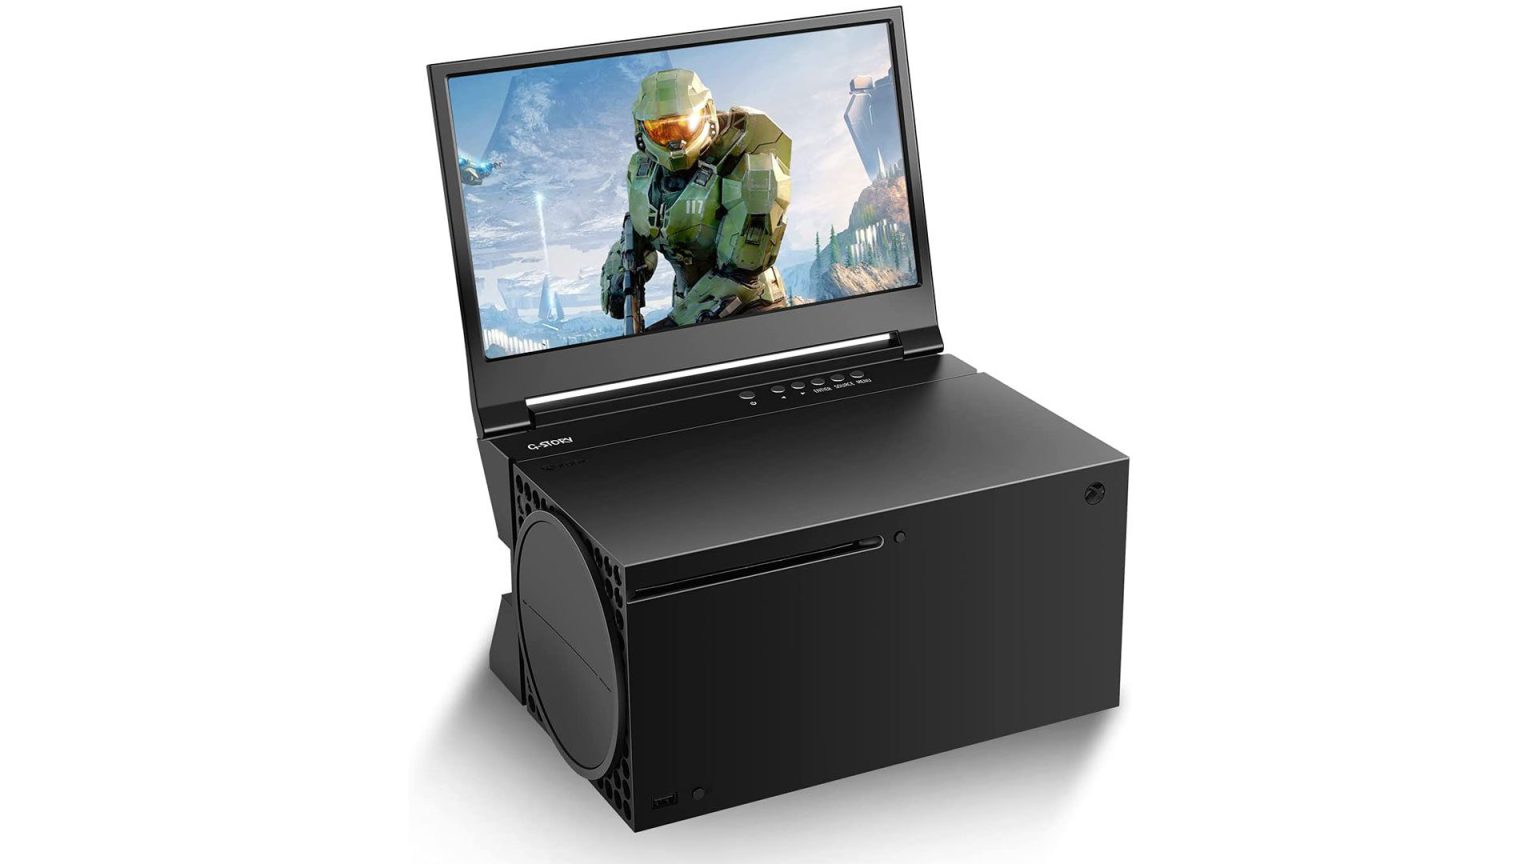 Hoy os hablo del monitor G-STORY diseñado para convertir nuestra Xbox Series X en una consola transportable gracias a su diseño.